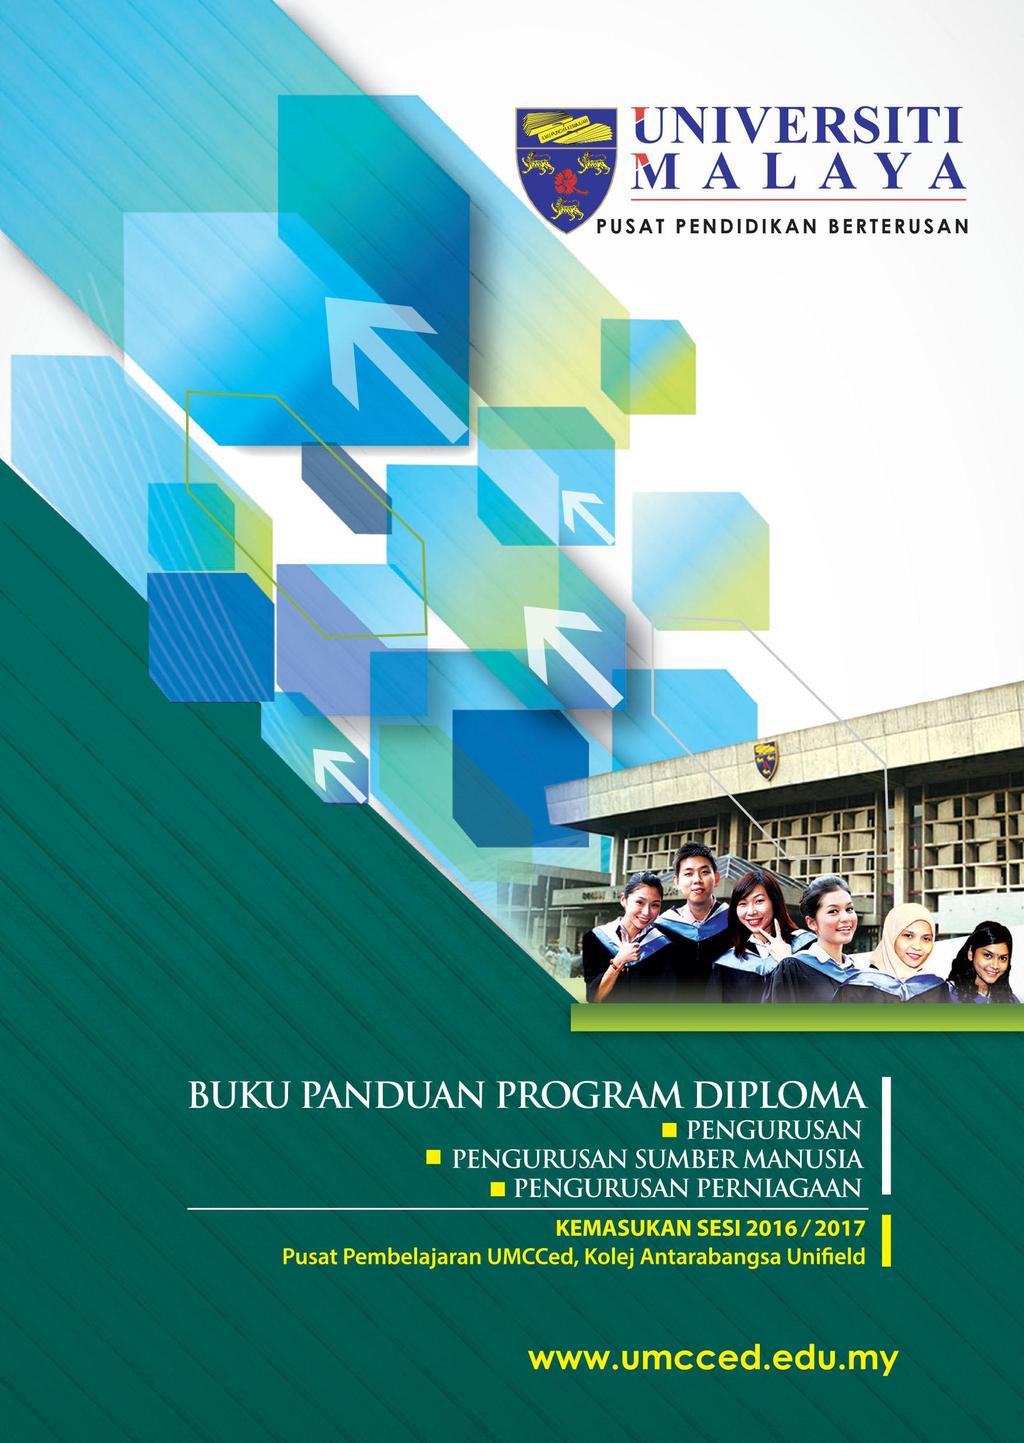 Buku Panduan Program Diploma Pengurusan Diploma Pengurusan Sumber Manusia Diploma Pengurusan Perniagaan Pdf Download Gratis